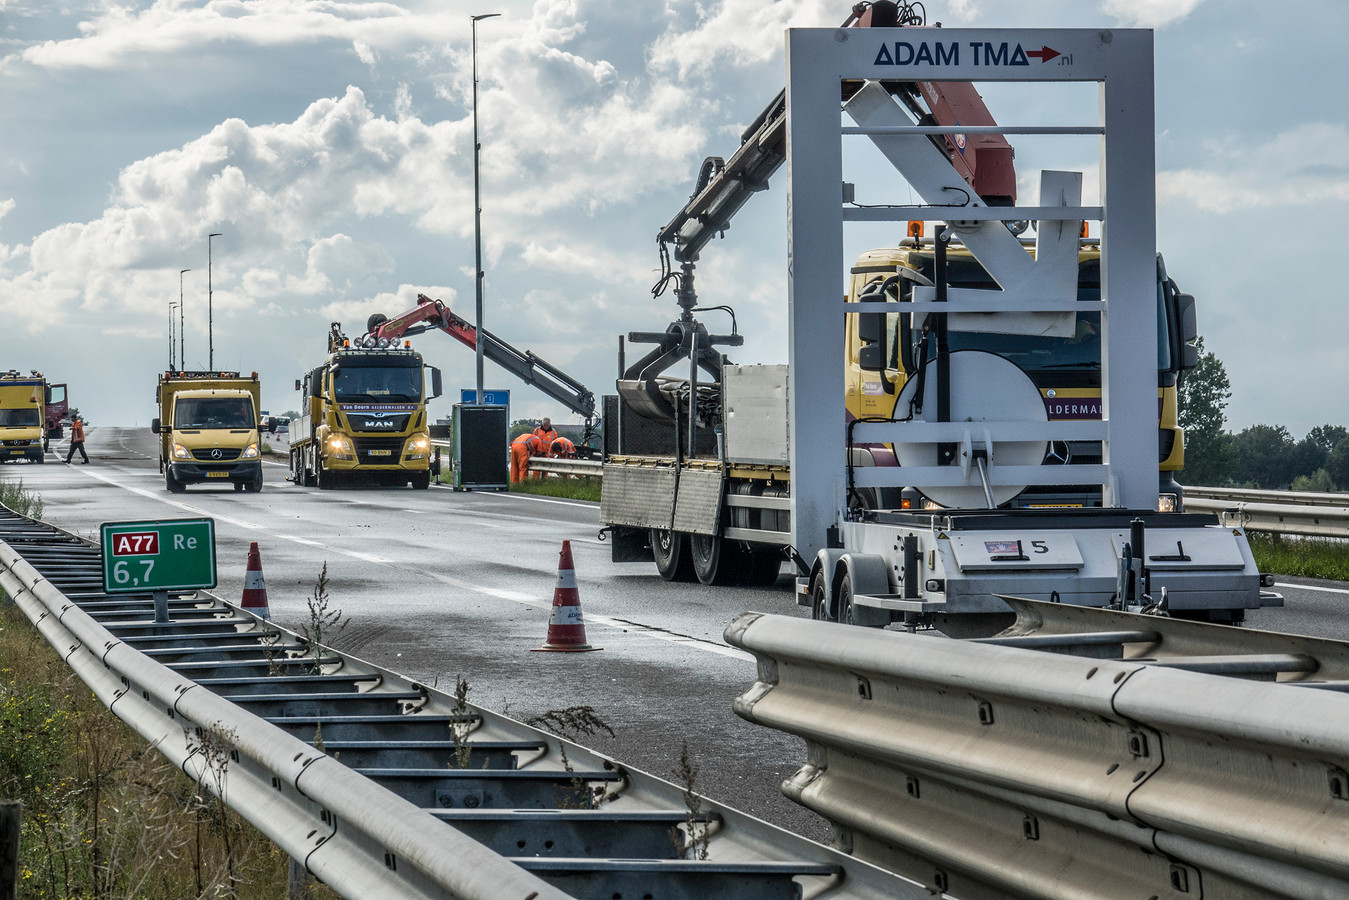 De A77 is afgesloten vanaf knooppunt Rijkevoort, de voegovergang met de brug wordt hersteld. De verwachting is dat het tot dinsdag 10 september gaat duren.